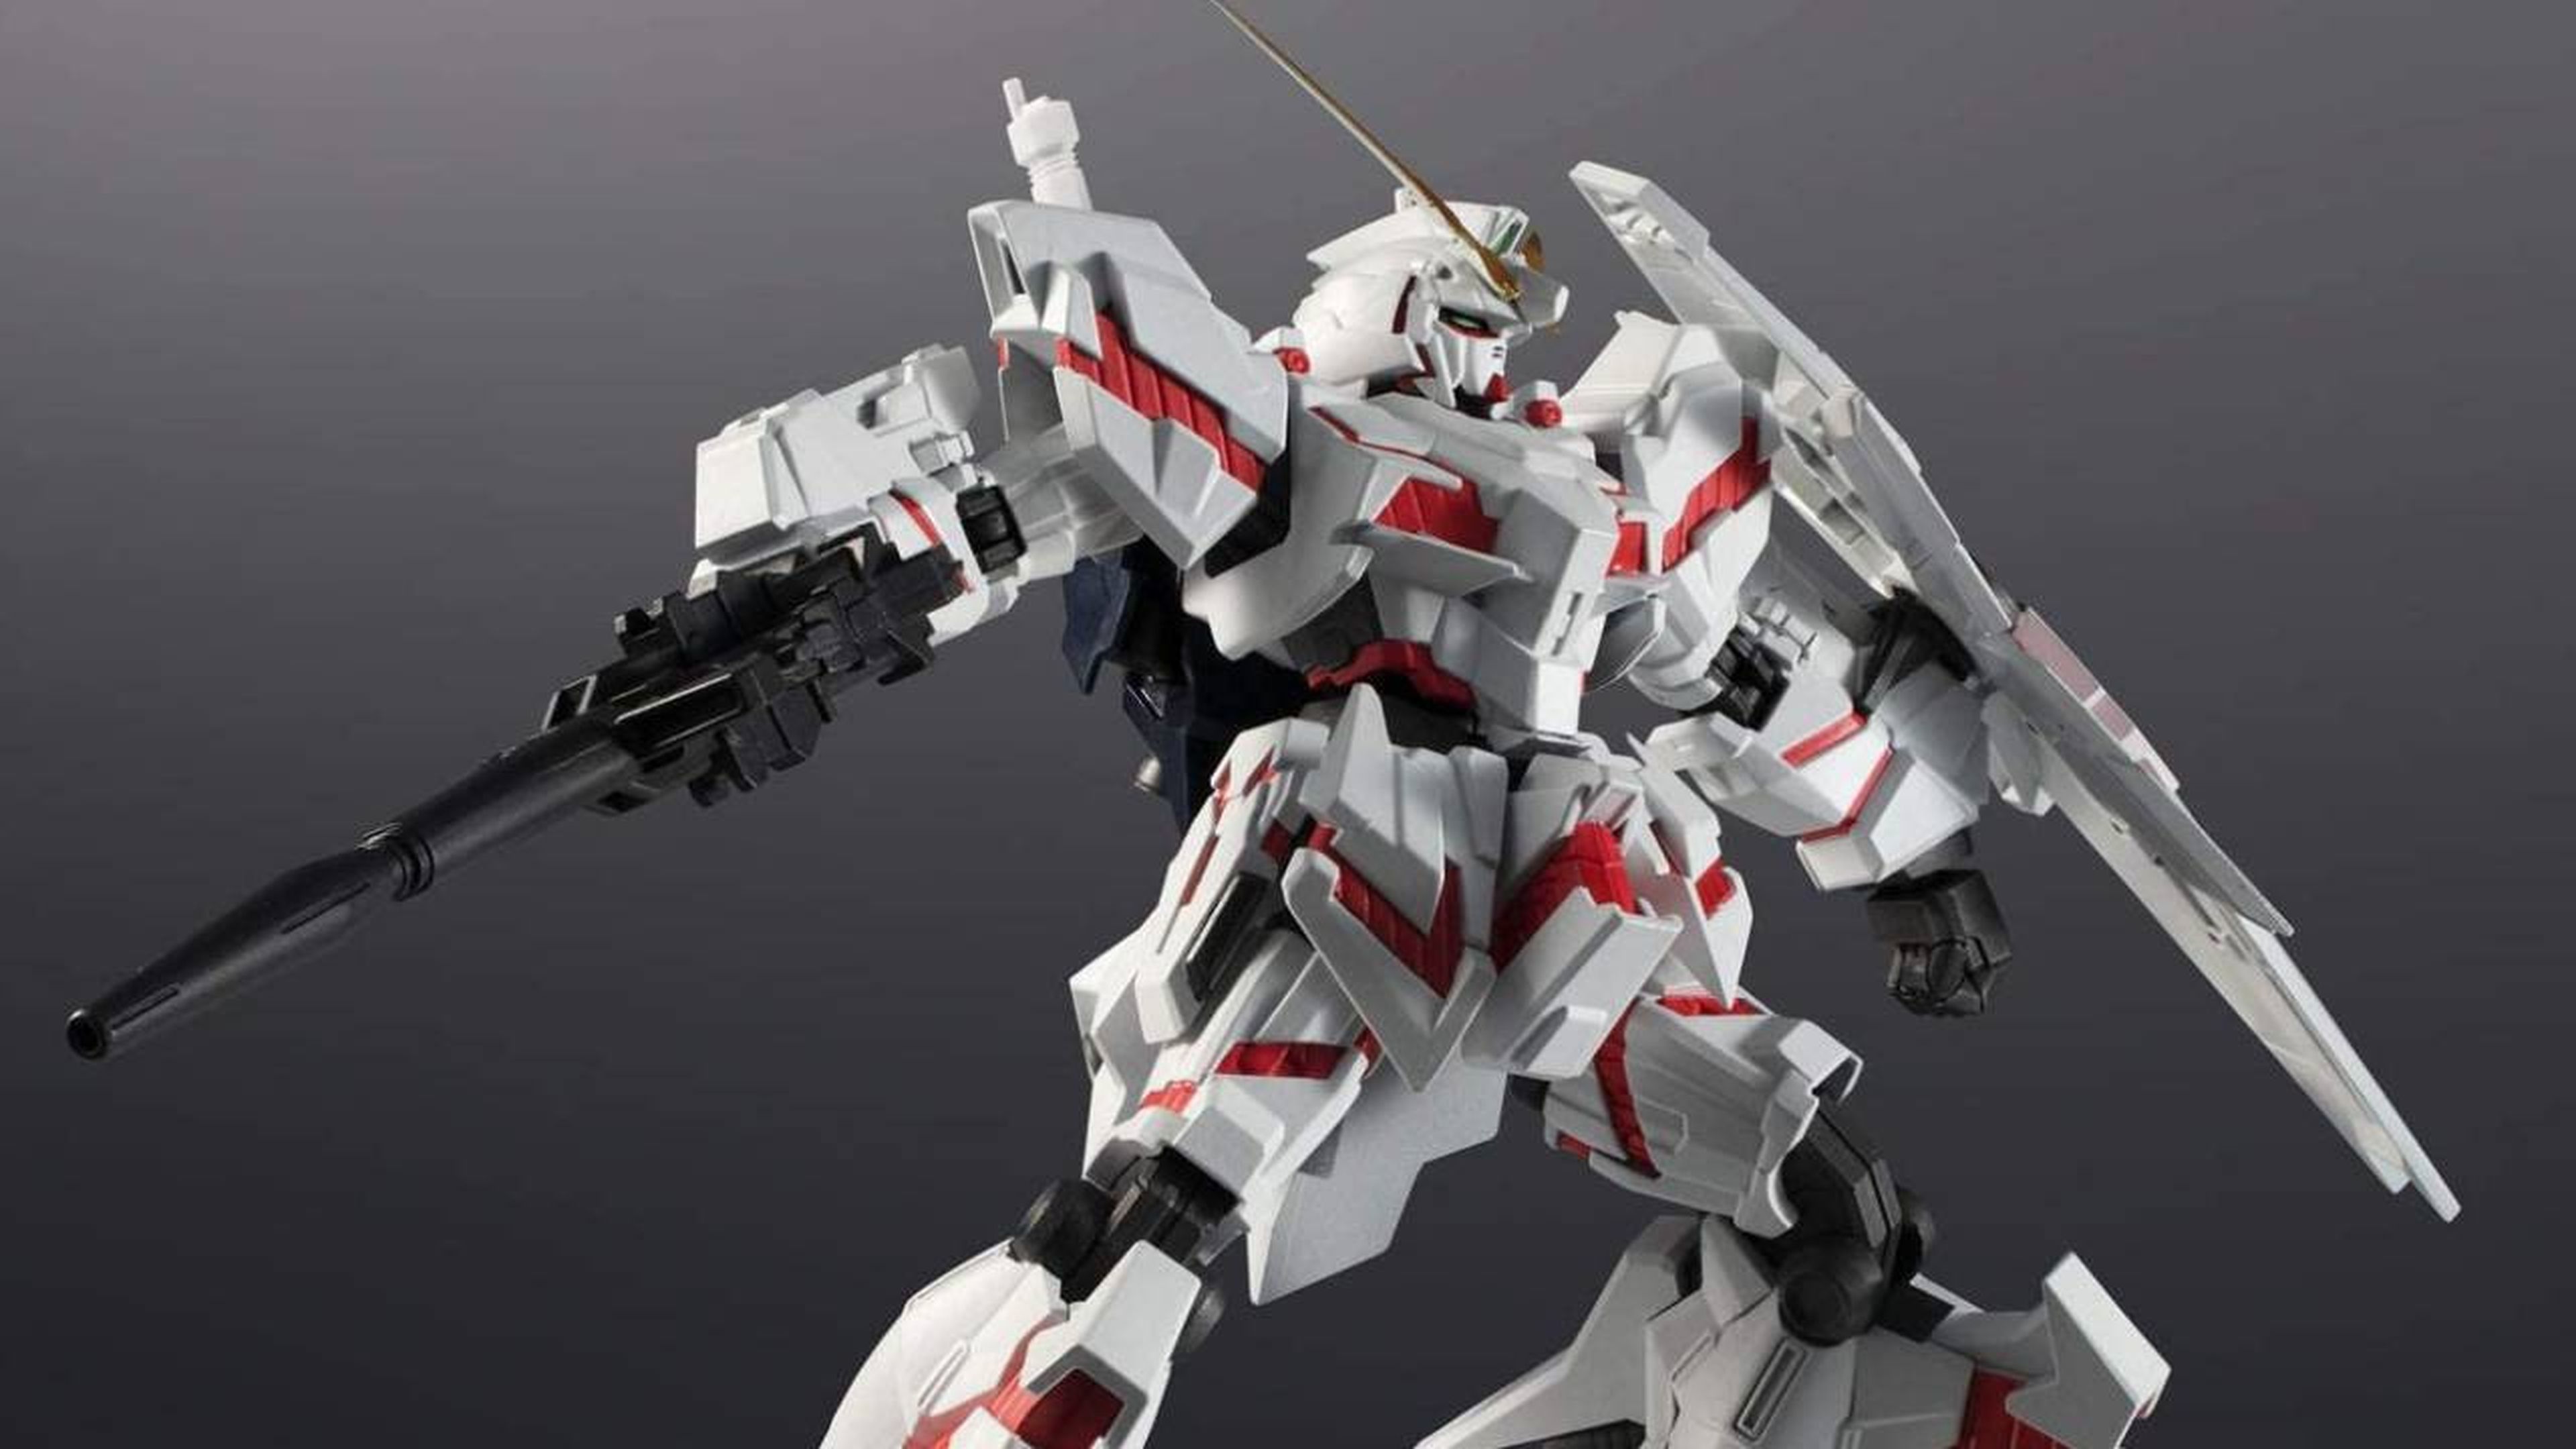 Un modelo Gundam reciente, el RX-0 Unicorn creado para celebrar el 40.º aniversario de la franquicia.